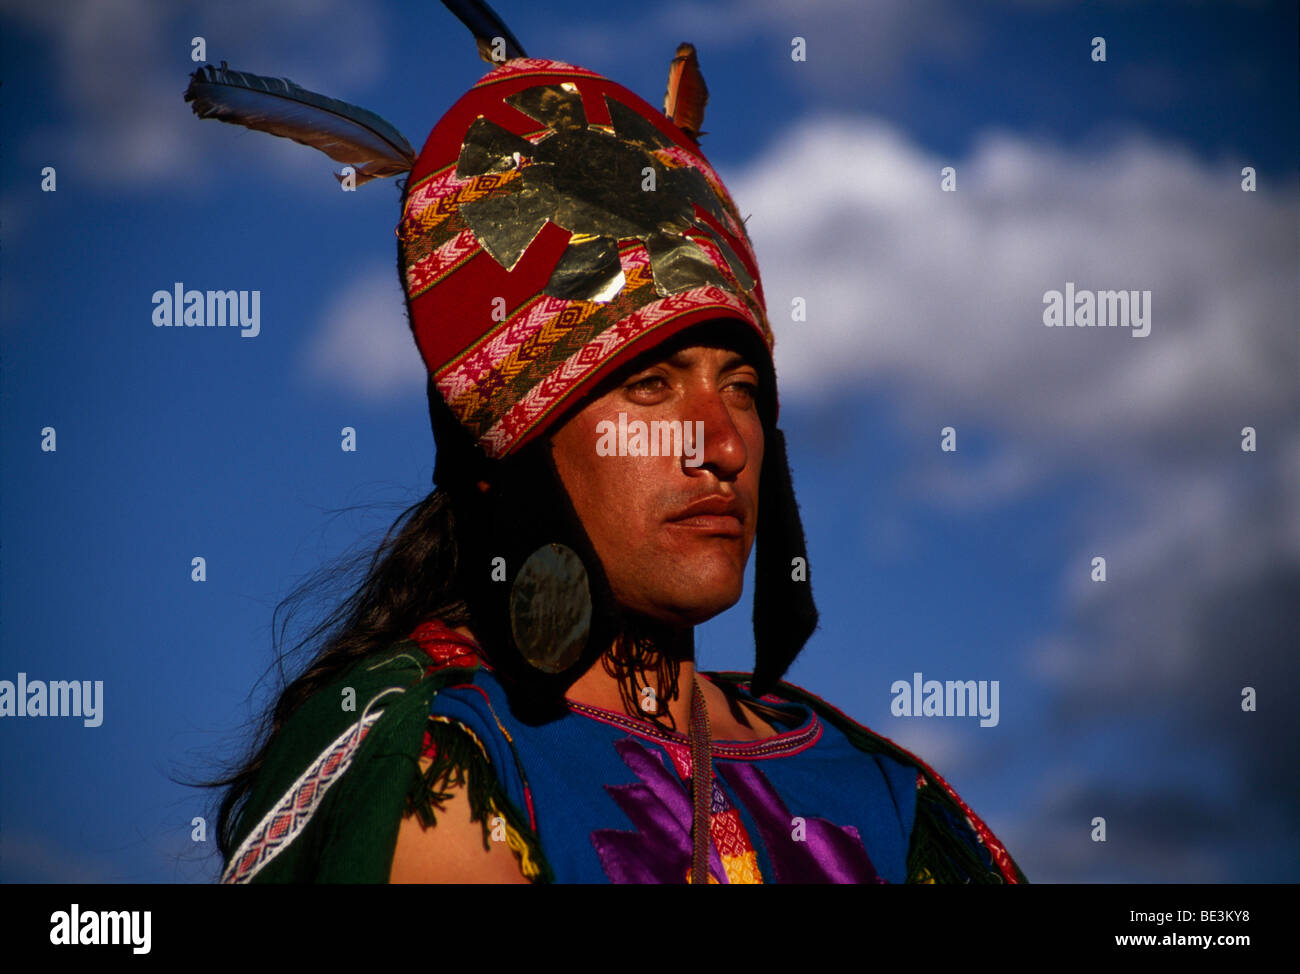 Inka guerrier, Festival d'Inti Raymi, Cuzco, Pérou, Amérique du Sud Banque D'Images